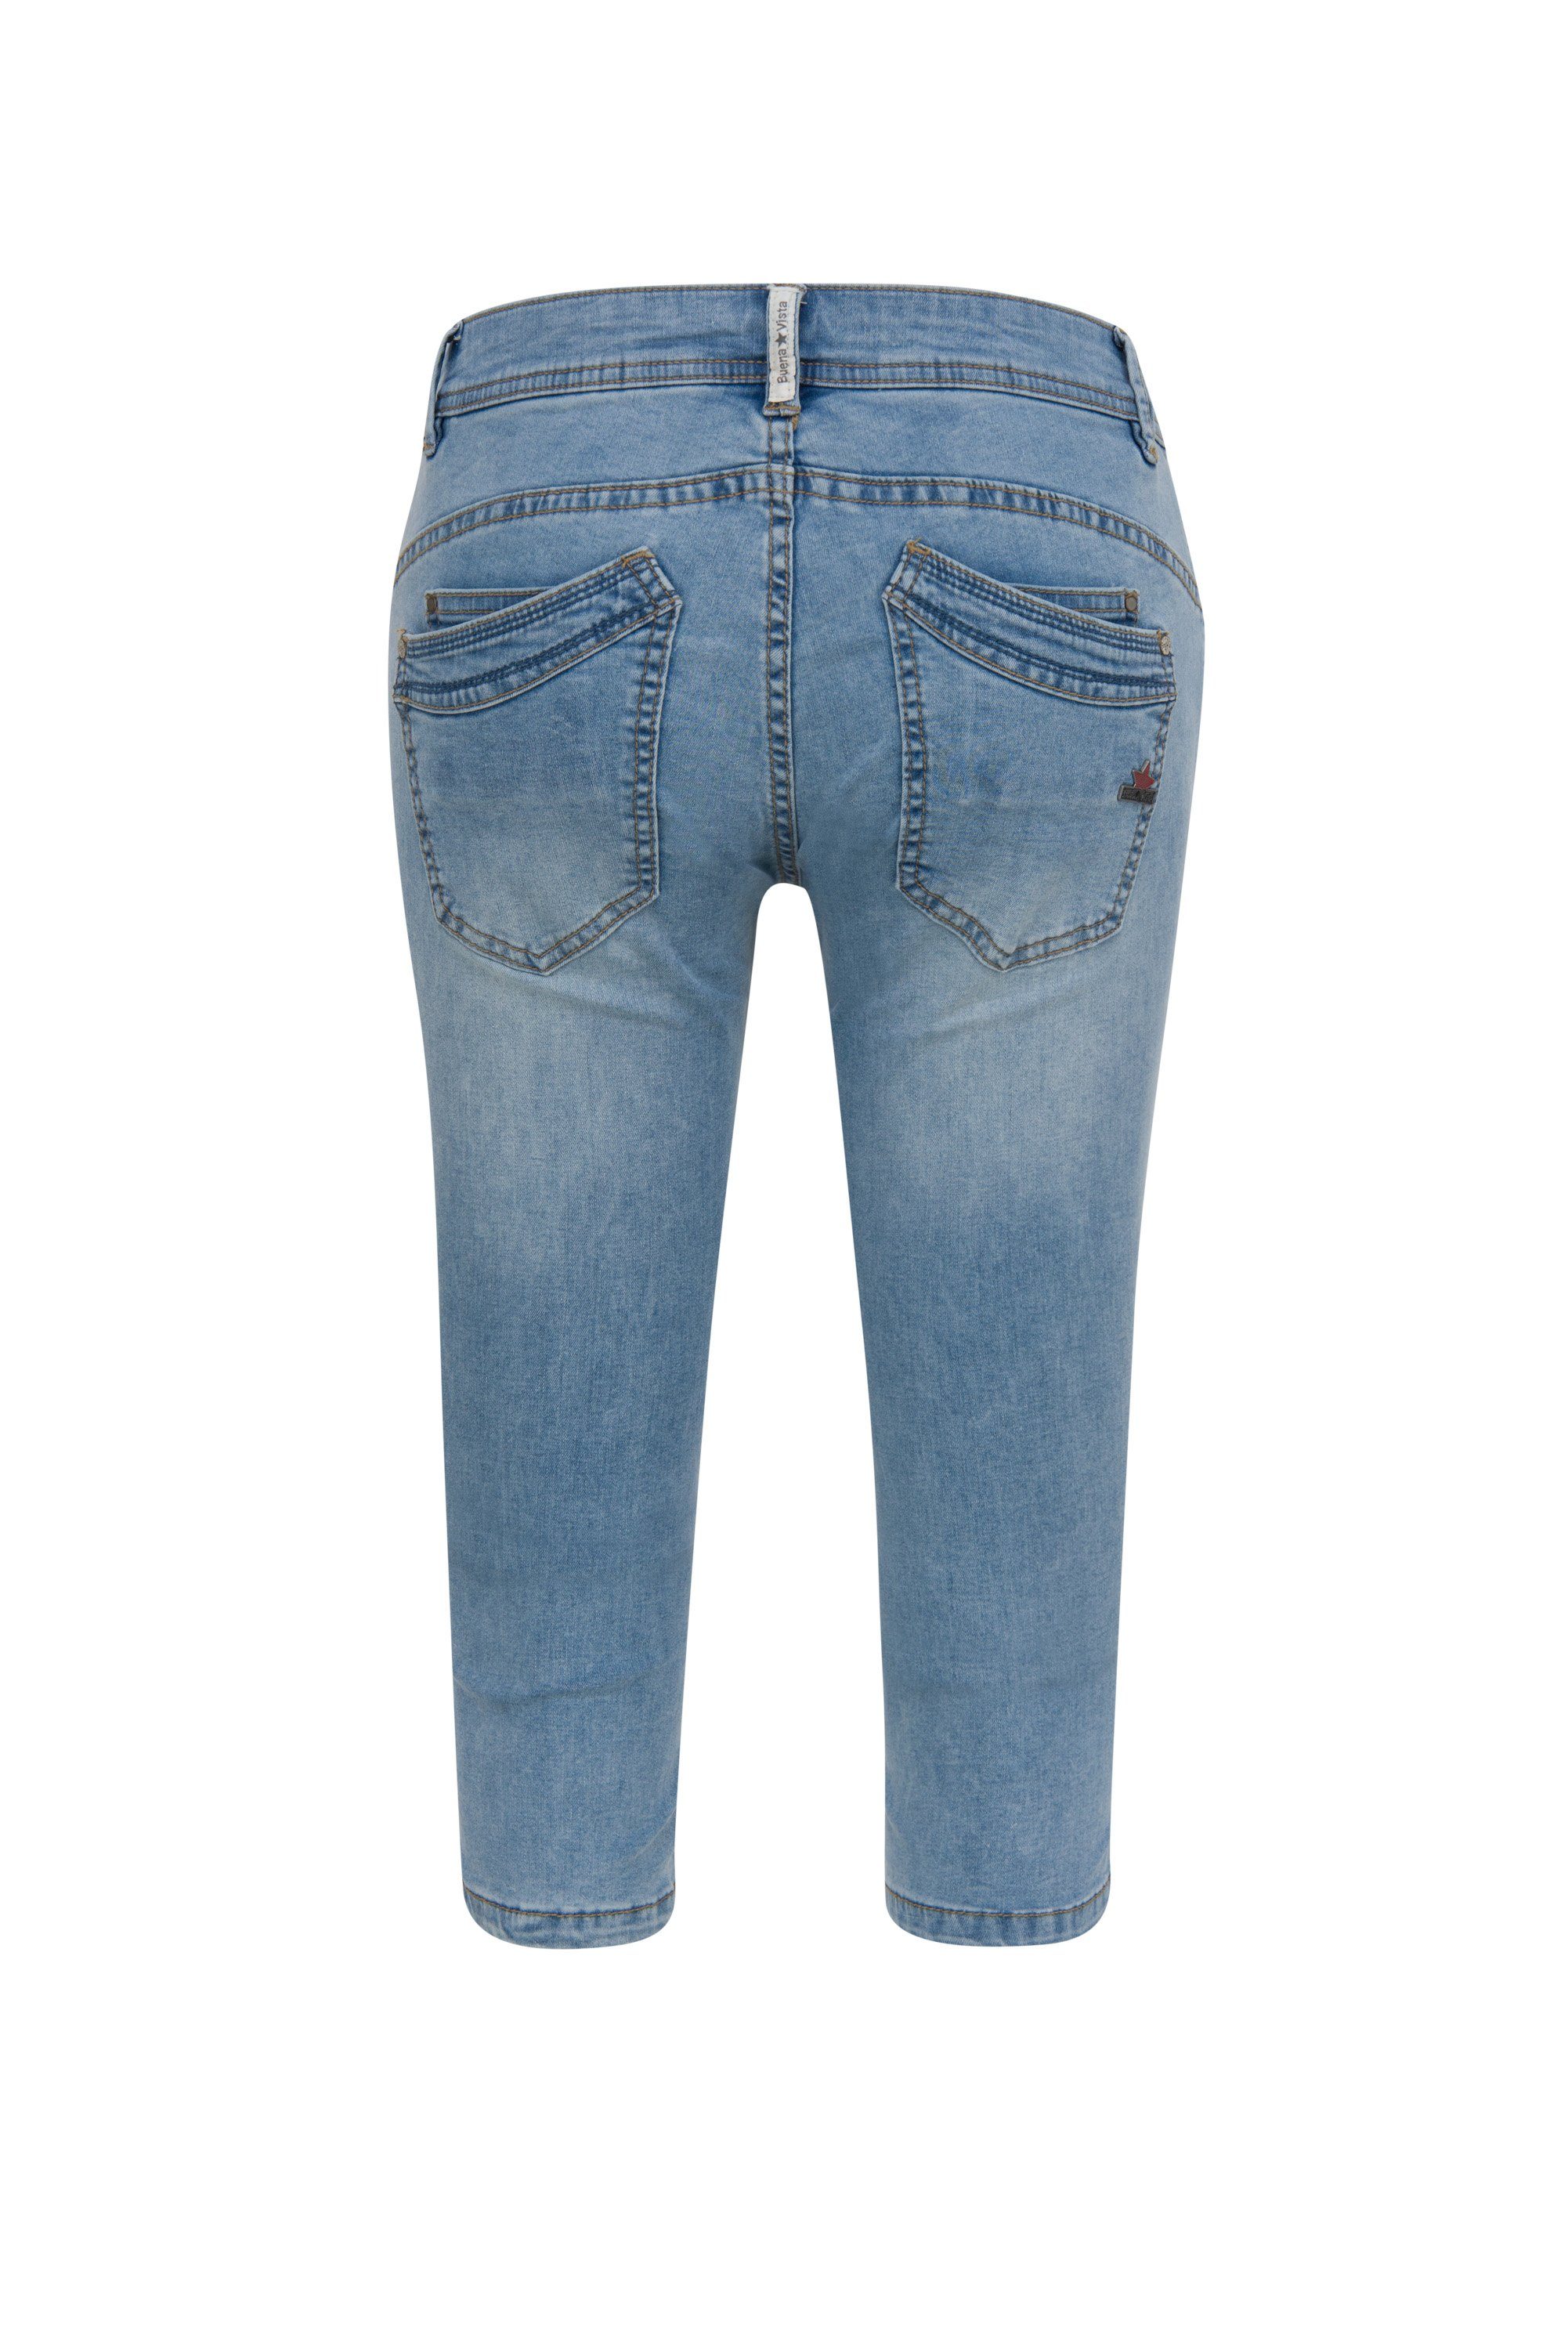 Buena Vista Stretch-Jeans blue middle - 2104 VISTA J5232 212.3898 Stretch CAPRI BUENA MALIBU